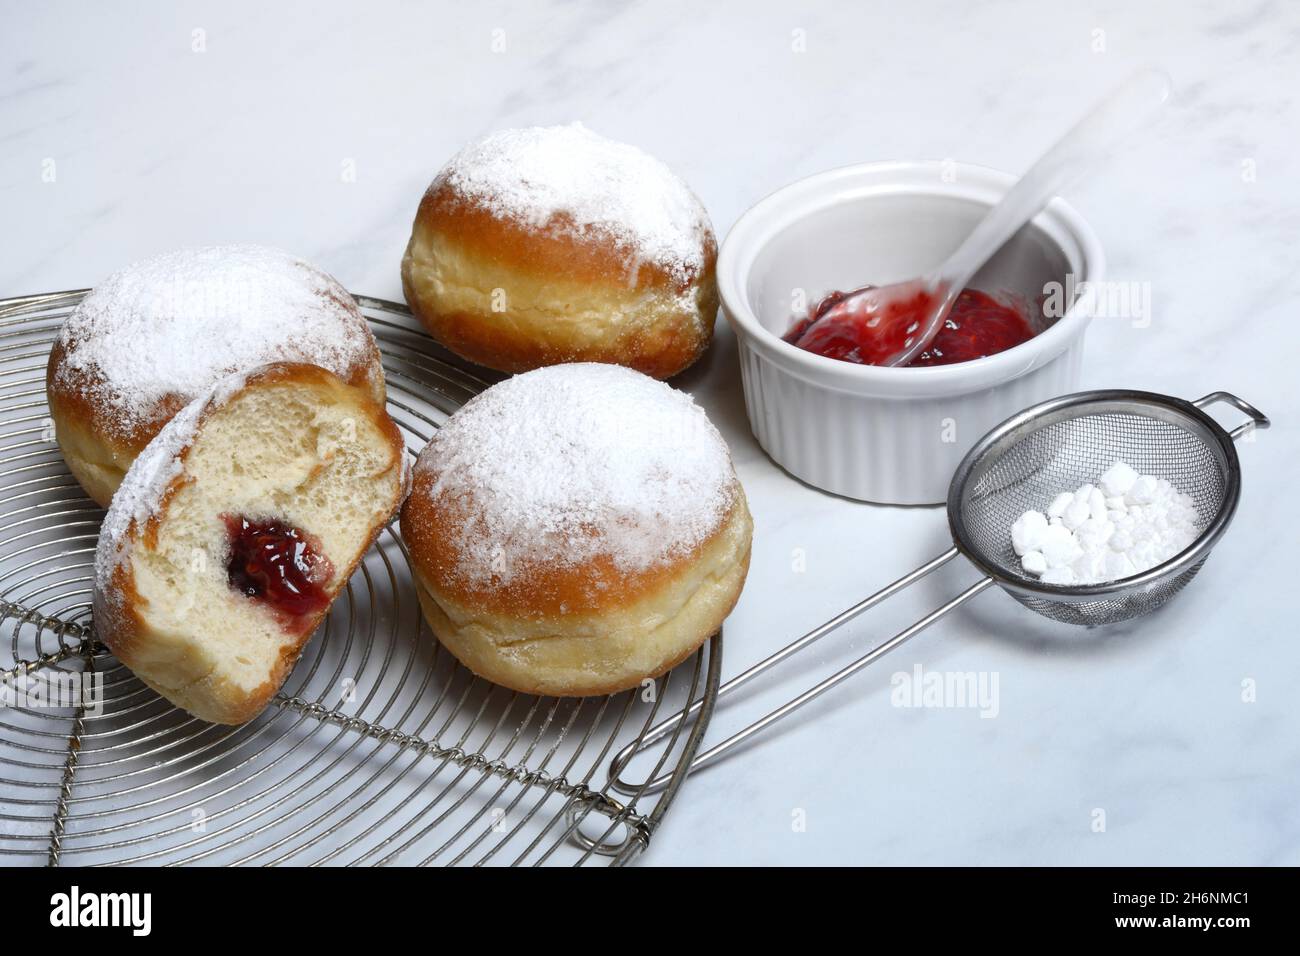 Gefüllte Berliner Pfannkuchen, Schüssel mit Marmelade und Sieb mit Puderzucker Stockfoto